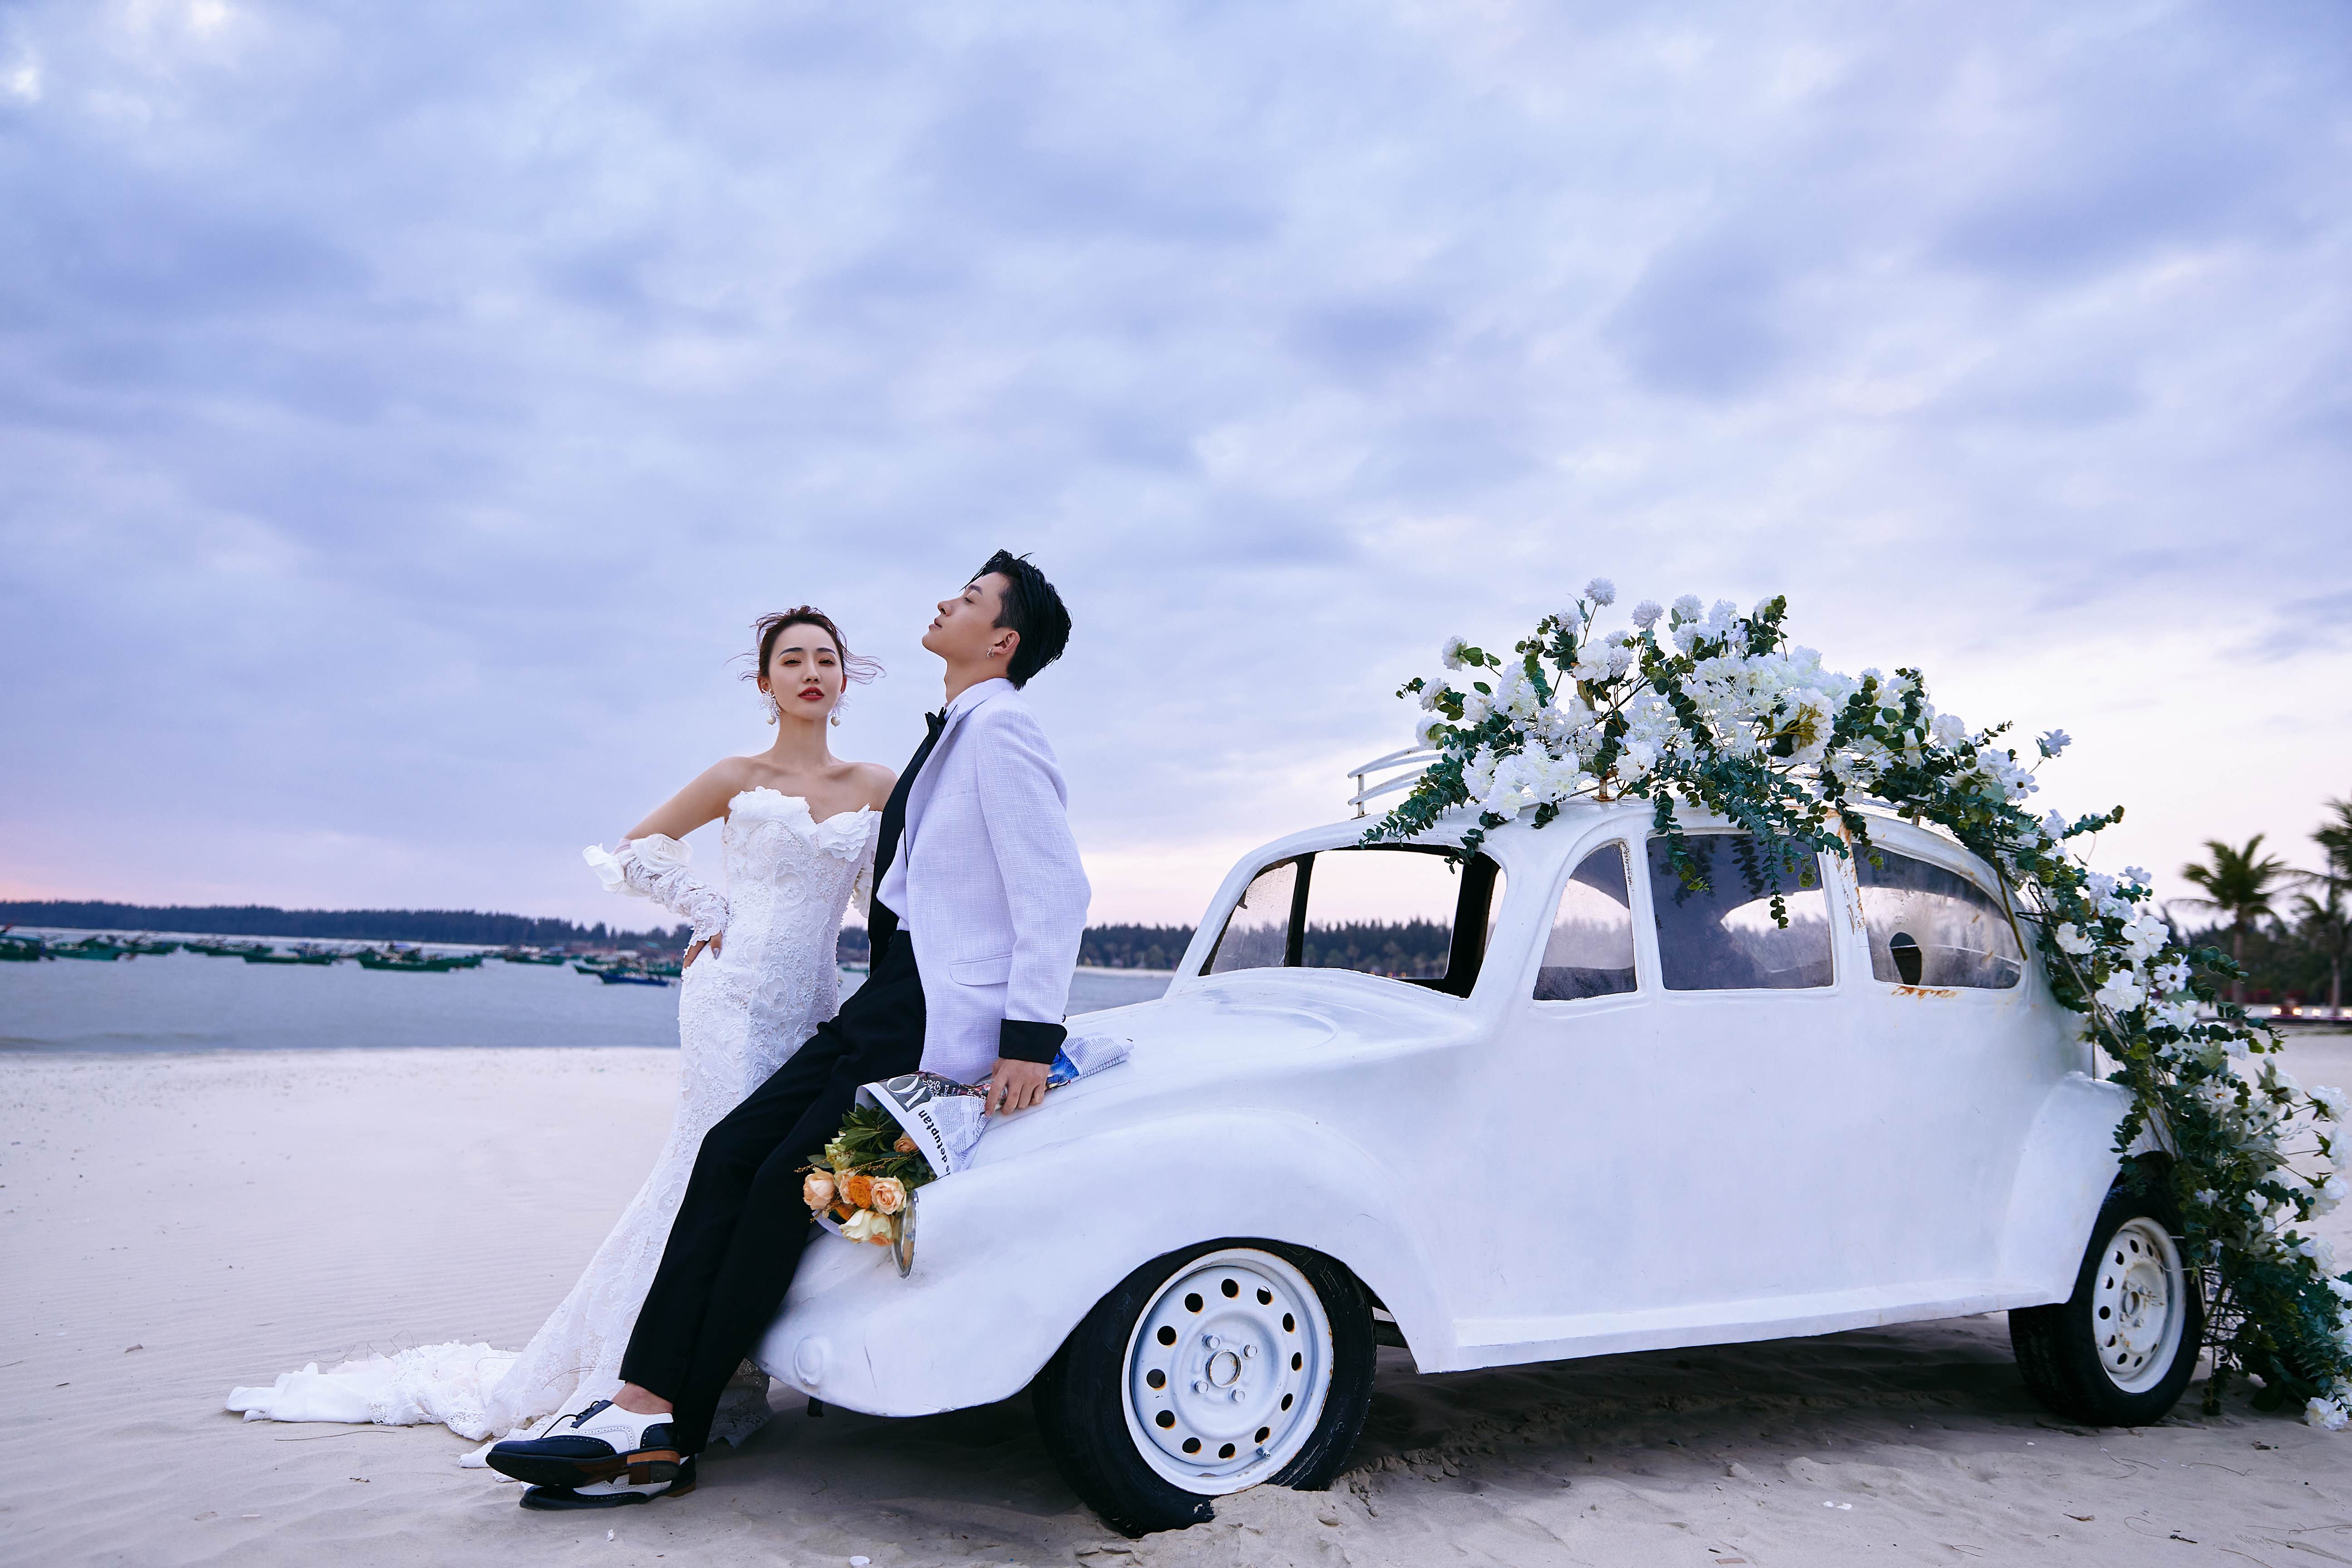 茂名浪漫海岸-酒店预订,门票预订,婚纱摄影,首个以爱与浪漫为主题的国际旅游度假区